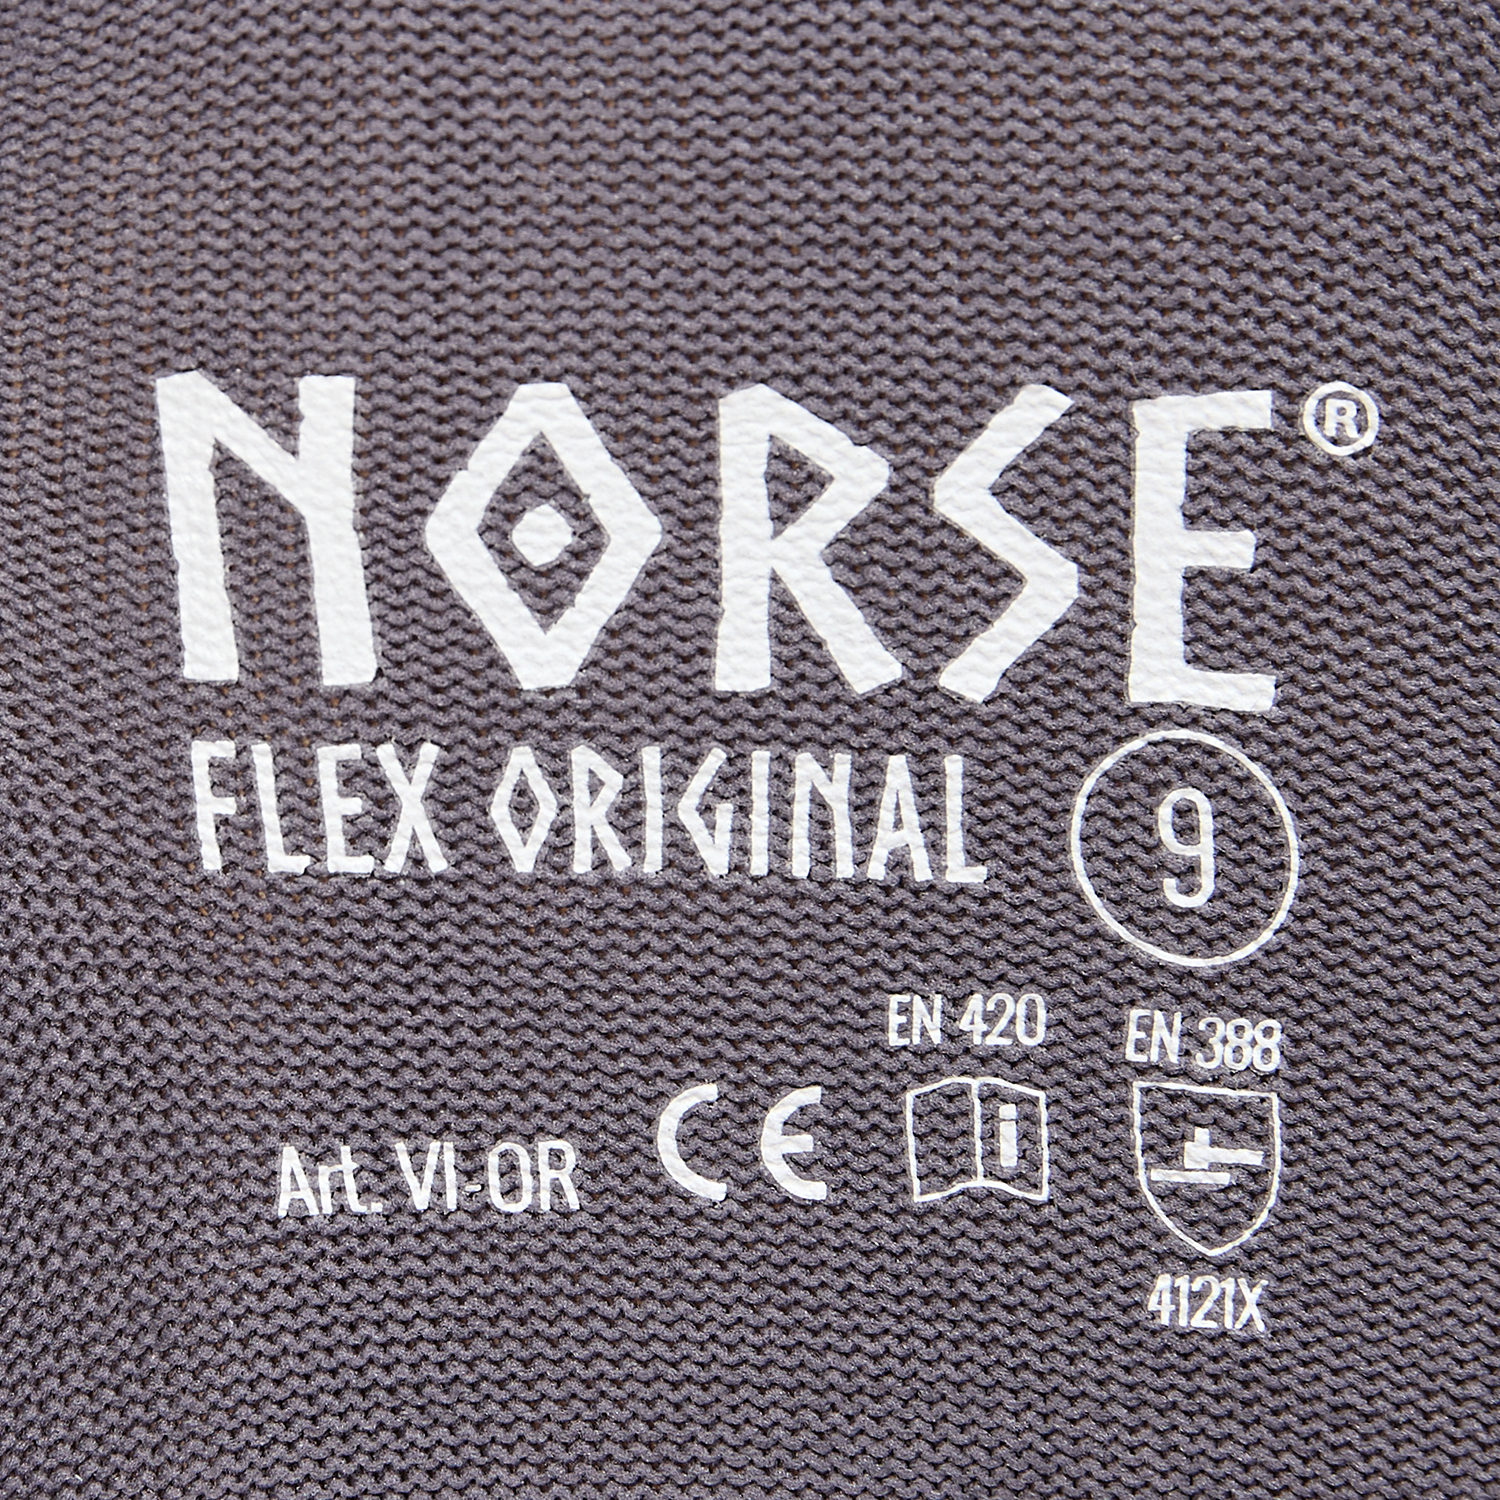 Guantes de montaje NORSE Flex Original talla 8